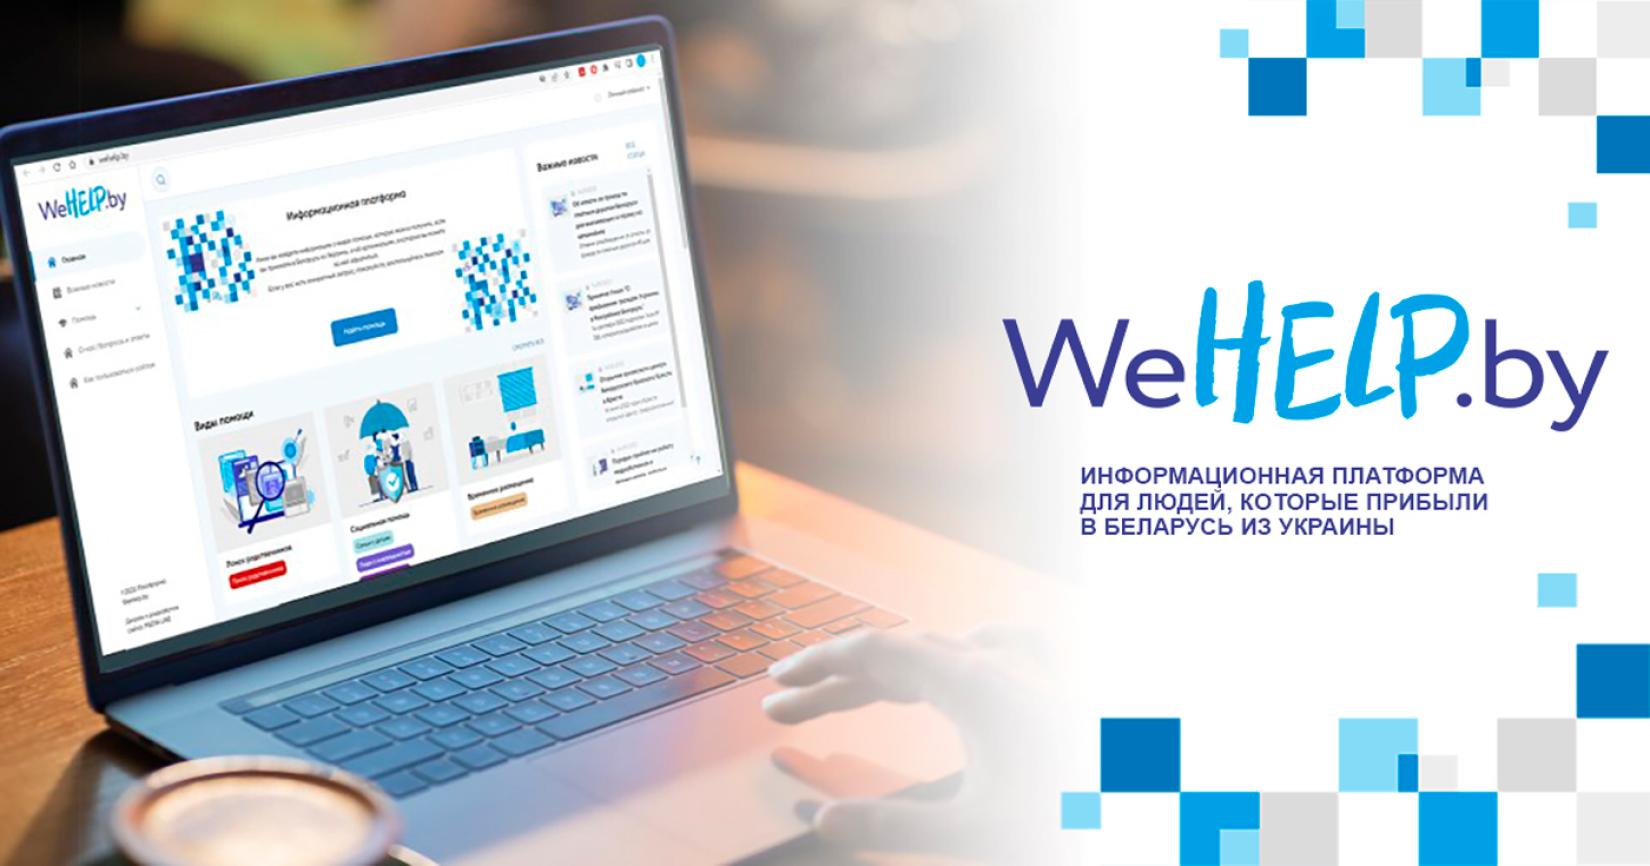 Агенцтвы ААН распрацавалі анлайн-платформу WeHelp, якая функцыянуе як інфармацыйны партал для бежанцаў з Украіны